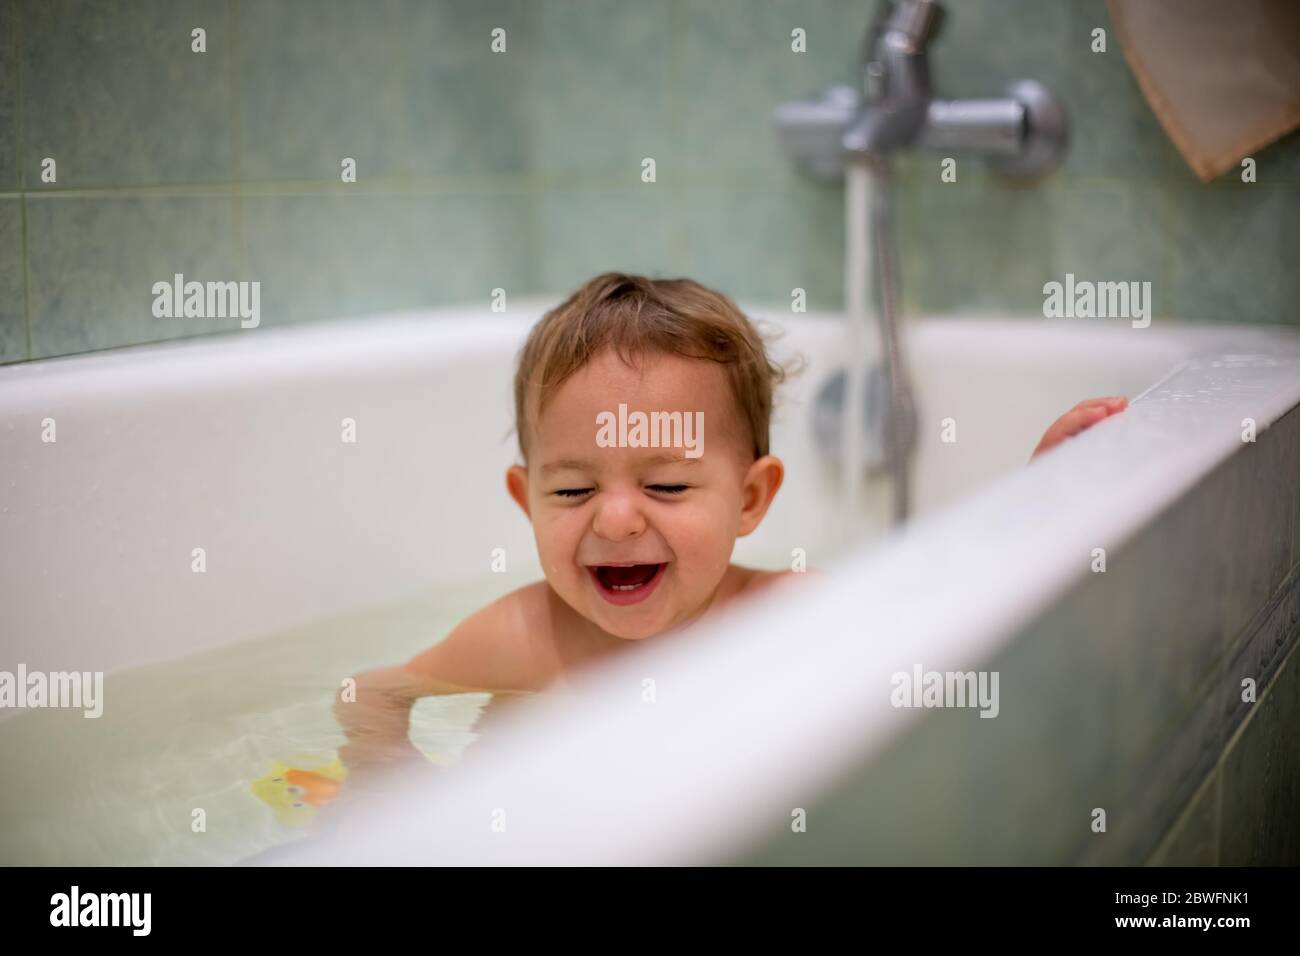 oncept de la felicidad familiar y de la paternidad. Lindo bebé caucásico tomando un baño en casa, riendo con los ojos cerrados. Salpicaduras de agua, en el Foto de stock